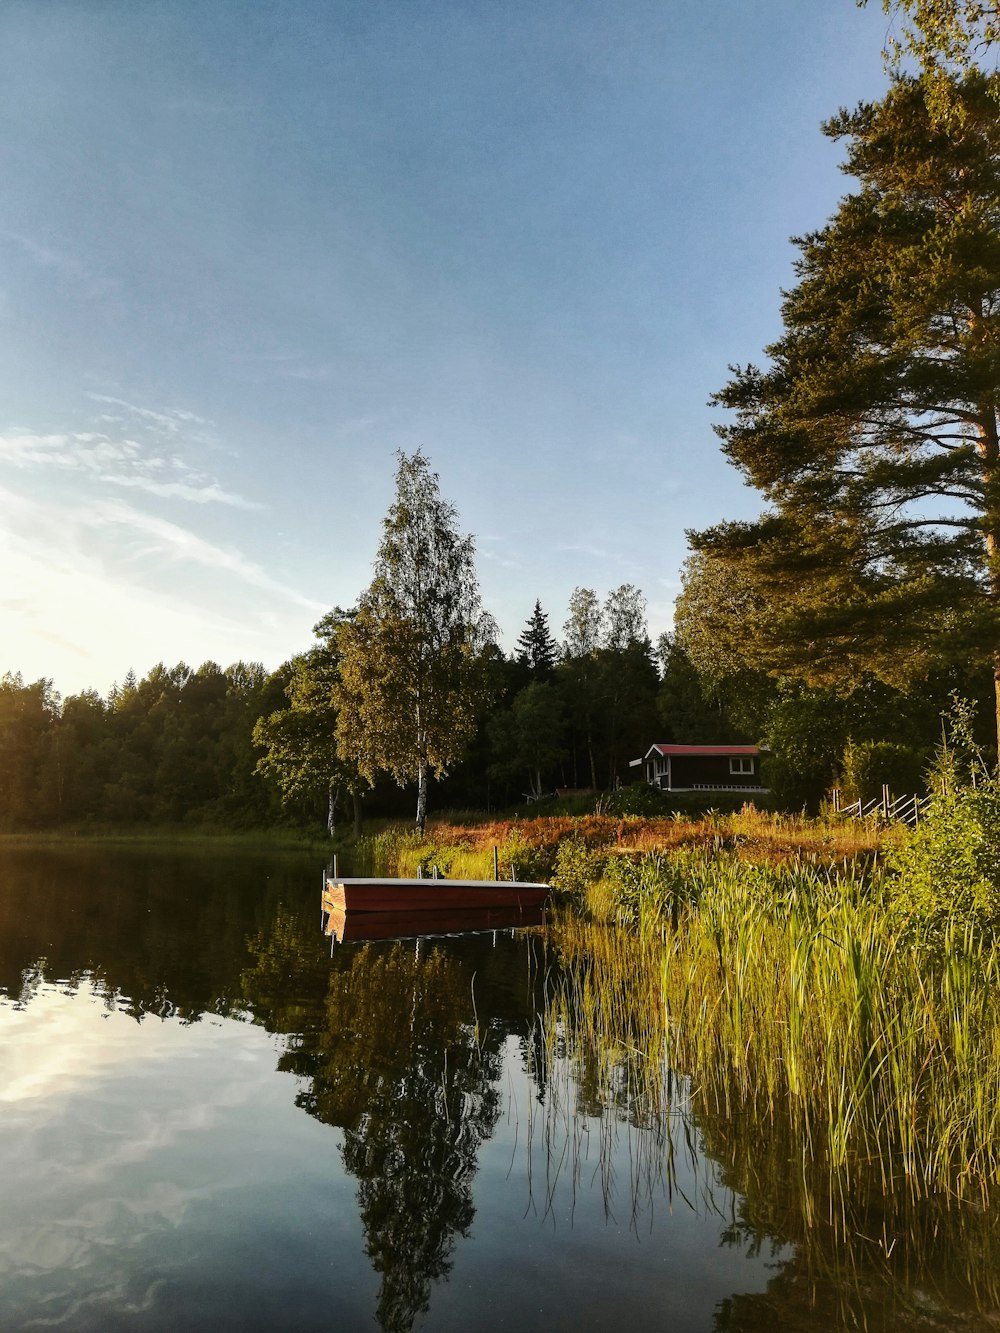 Braunes Holzdock am See, umgeben von grünen Bäumen unter blauem Himmel während des Tages